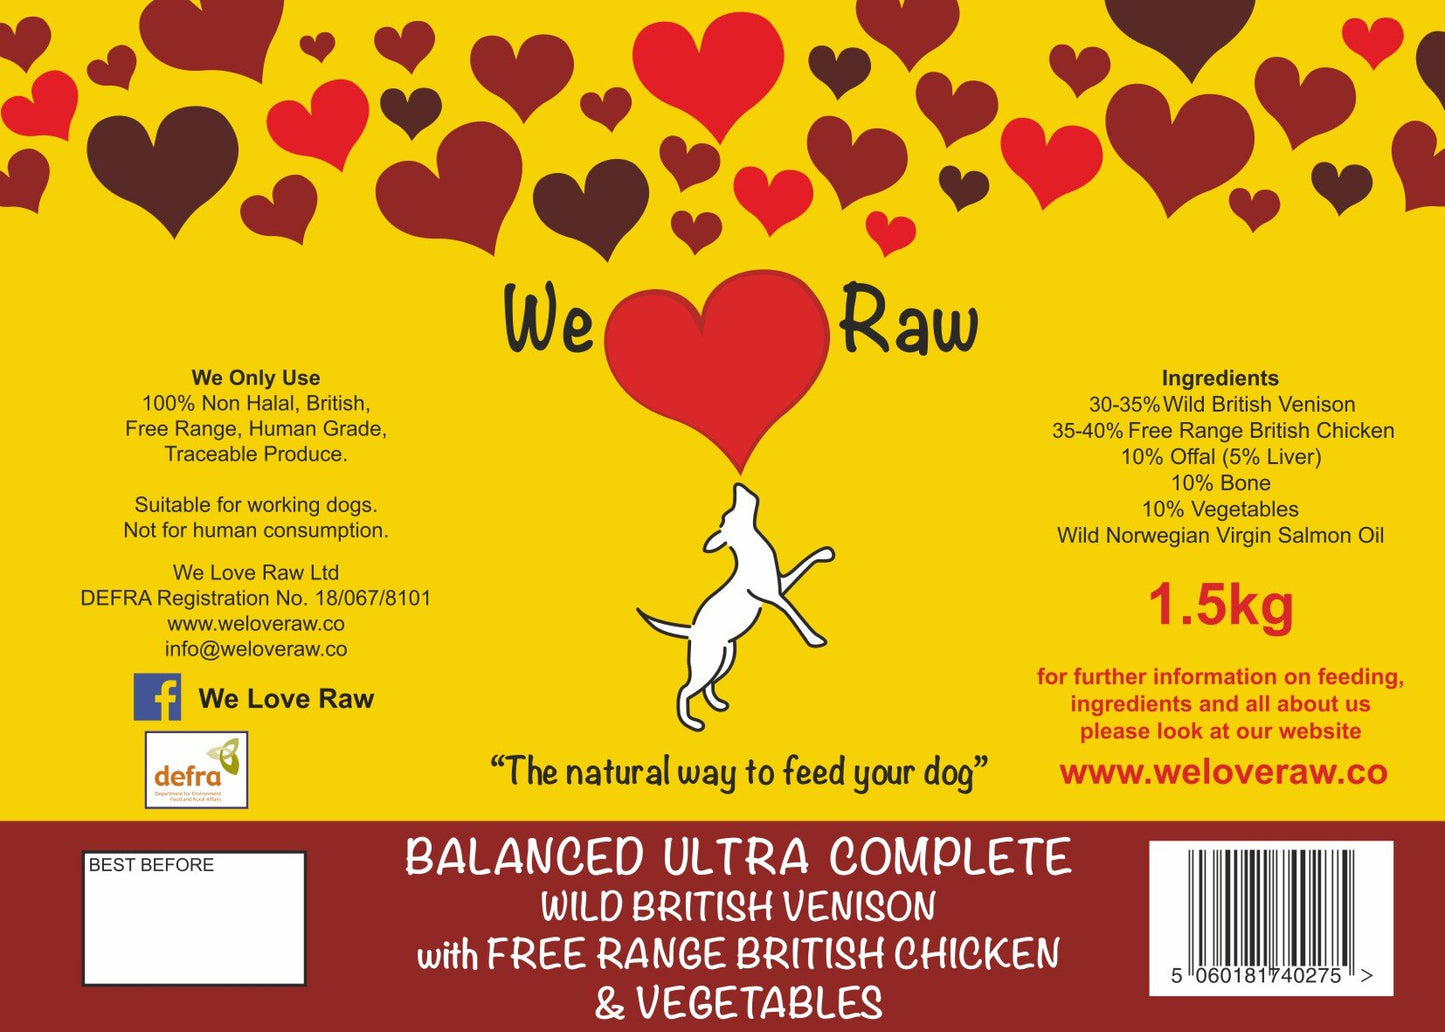 Balanced Ultra Complete: Wild British Venison with Free Range British Chicken & Vegetables